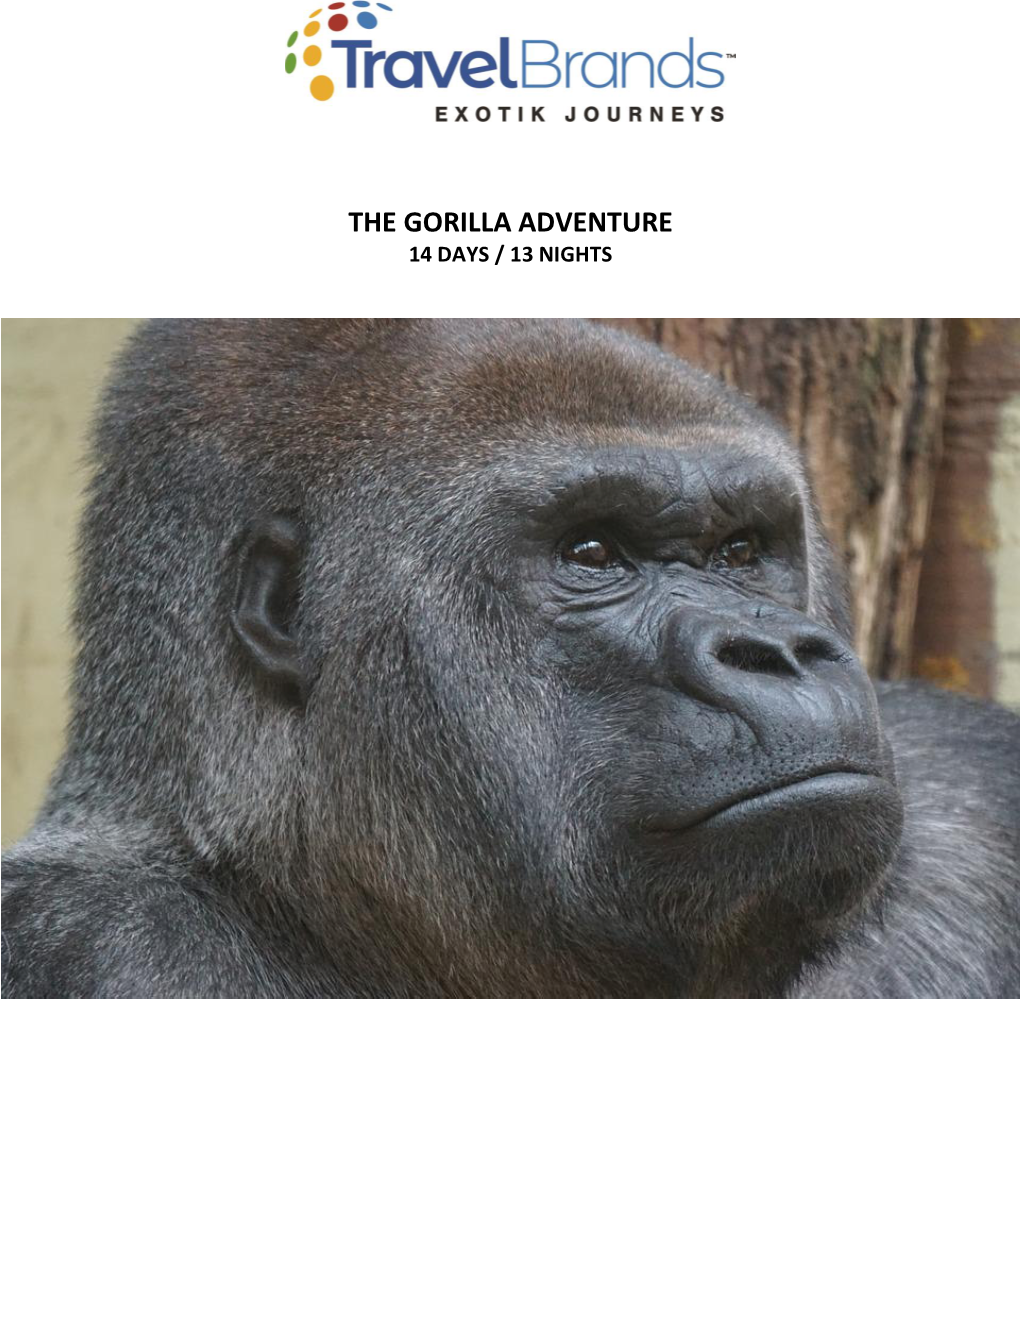 The Gorilla Adventure 14 Days / 13 Nights